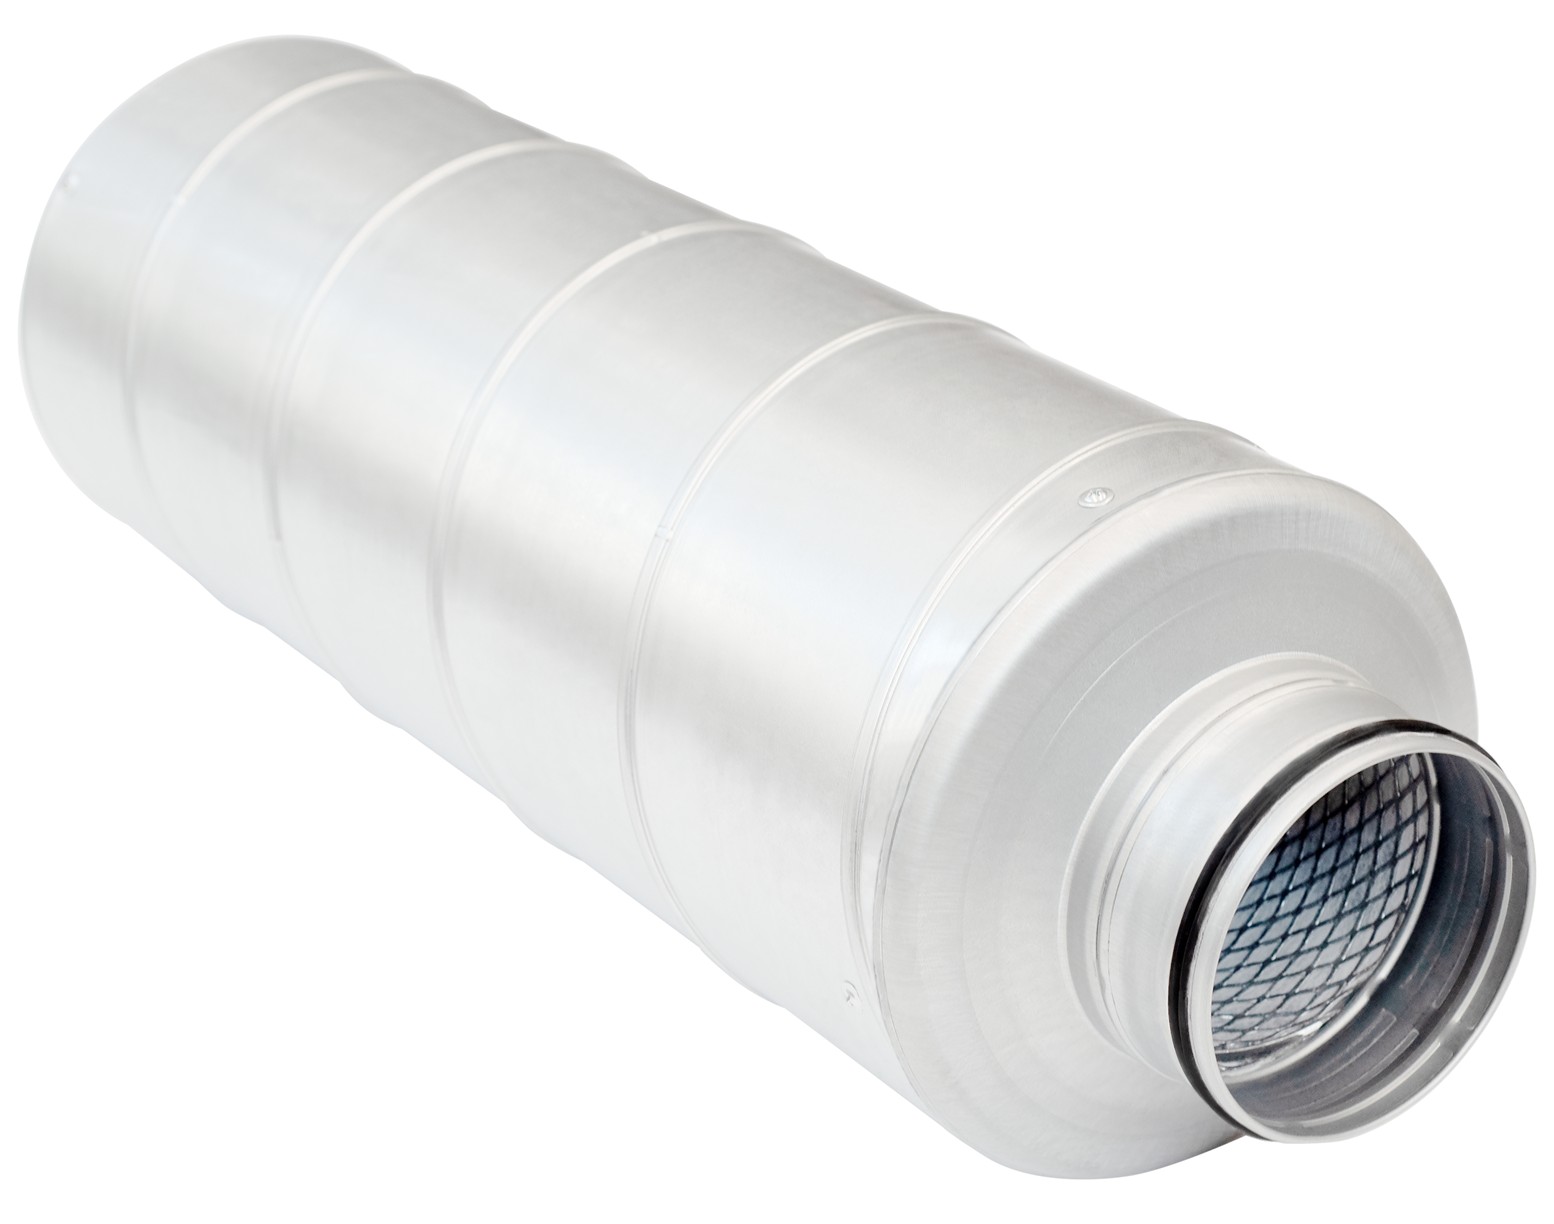 Отзывы вентиляционный шумоглушитель 315 мм Salda Mute 315x900 в Украине